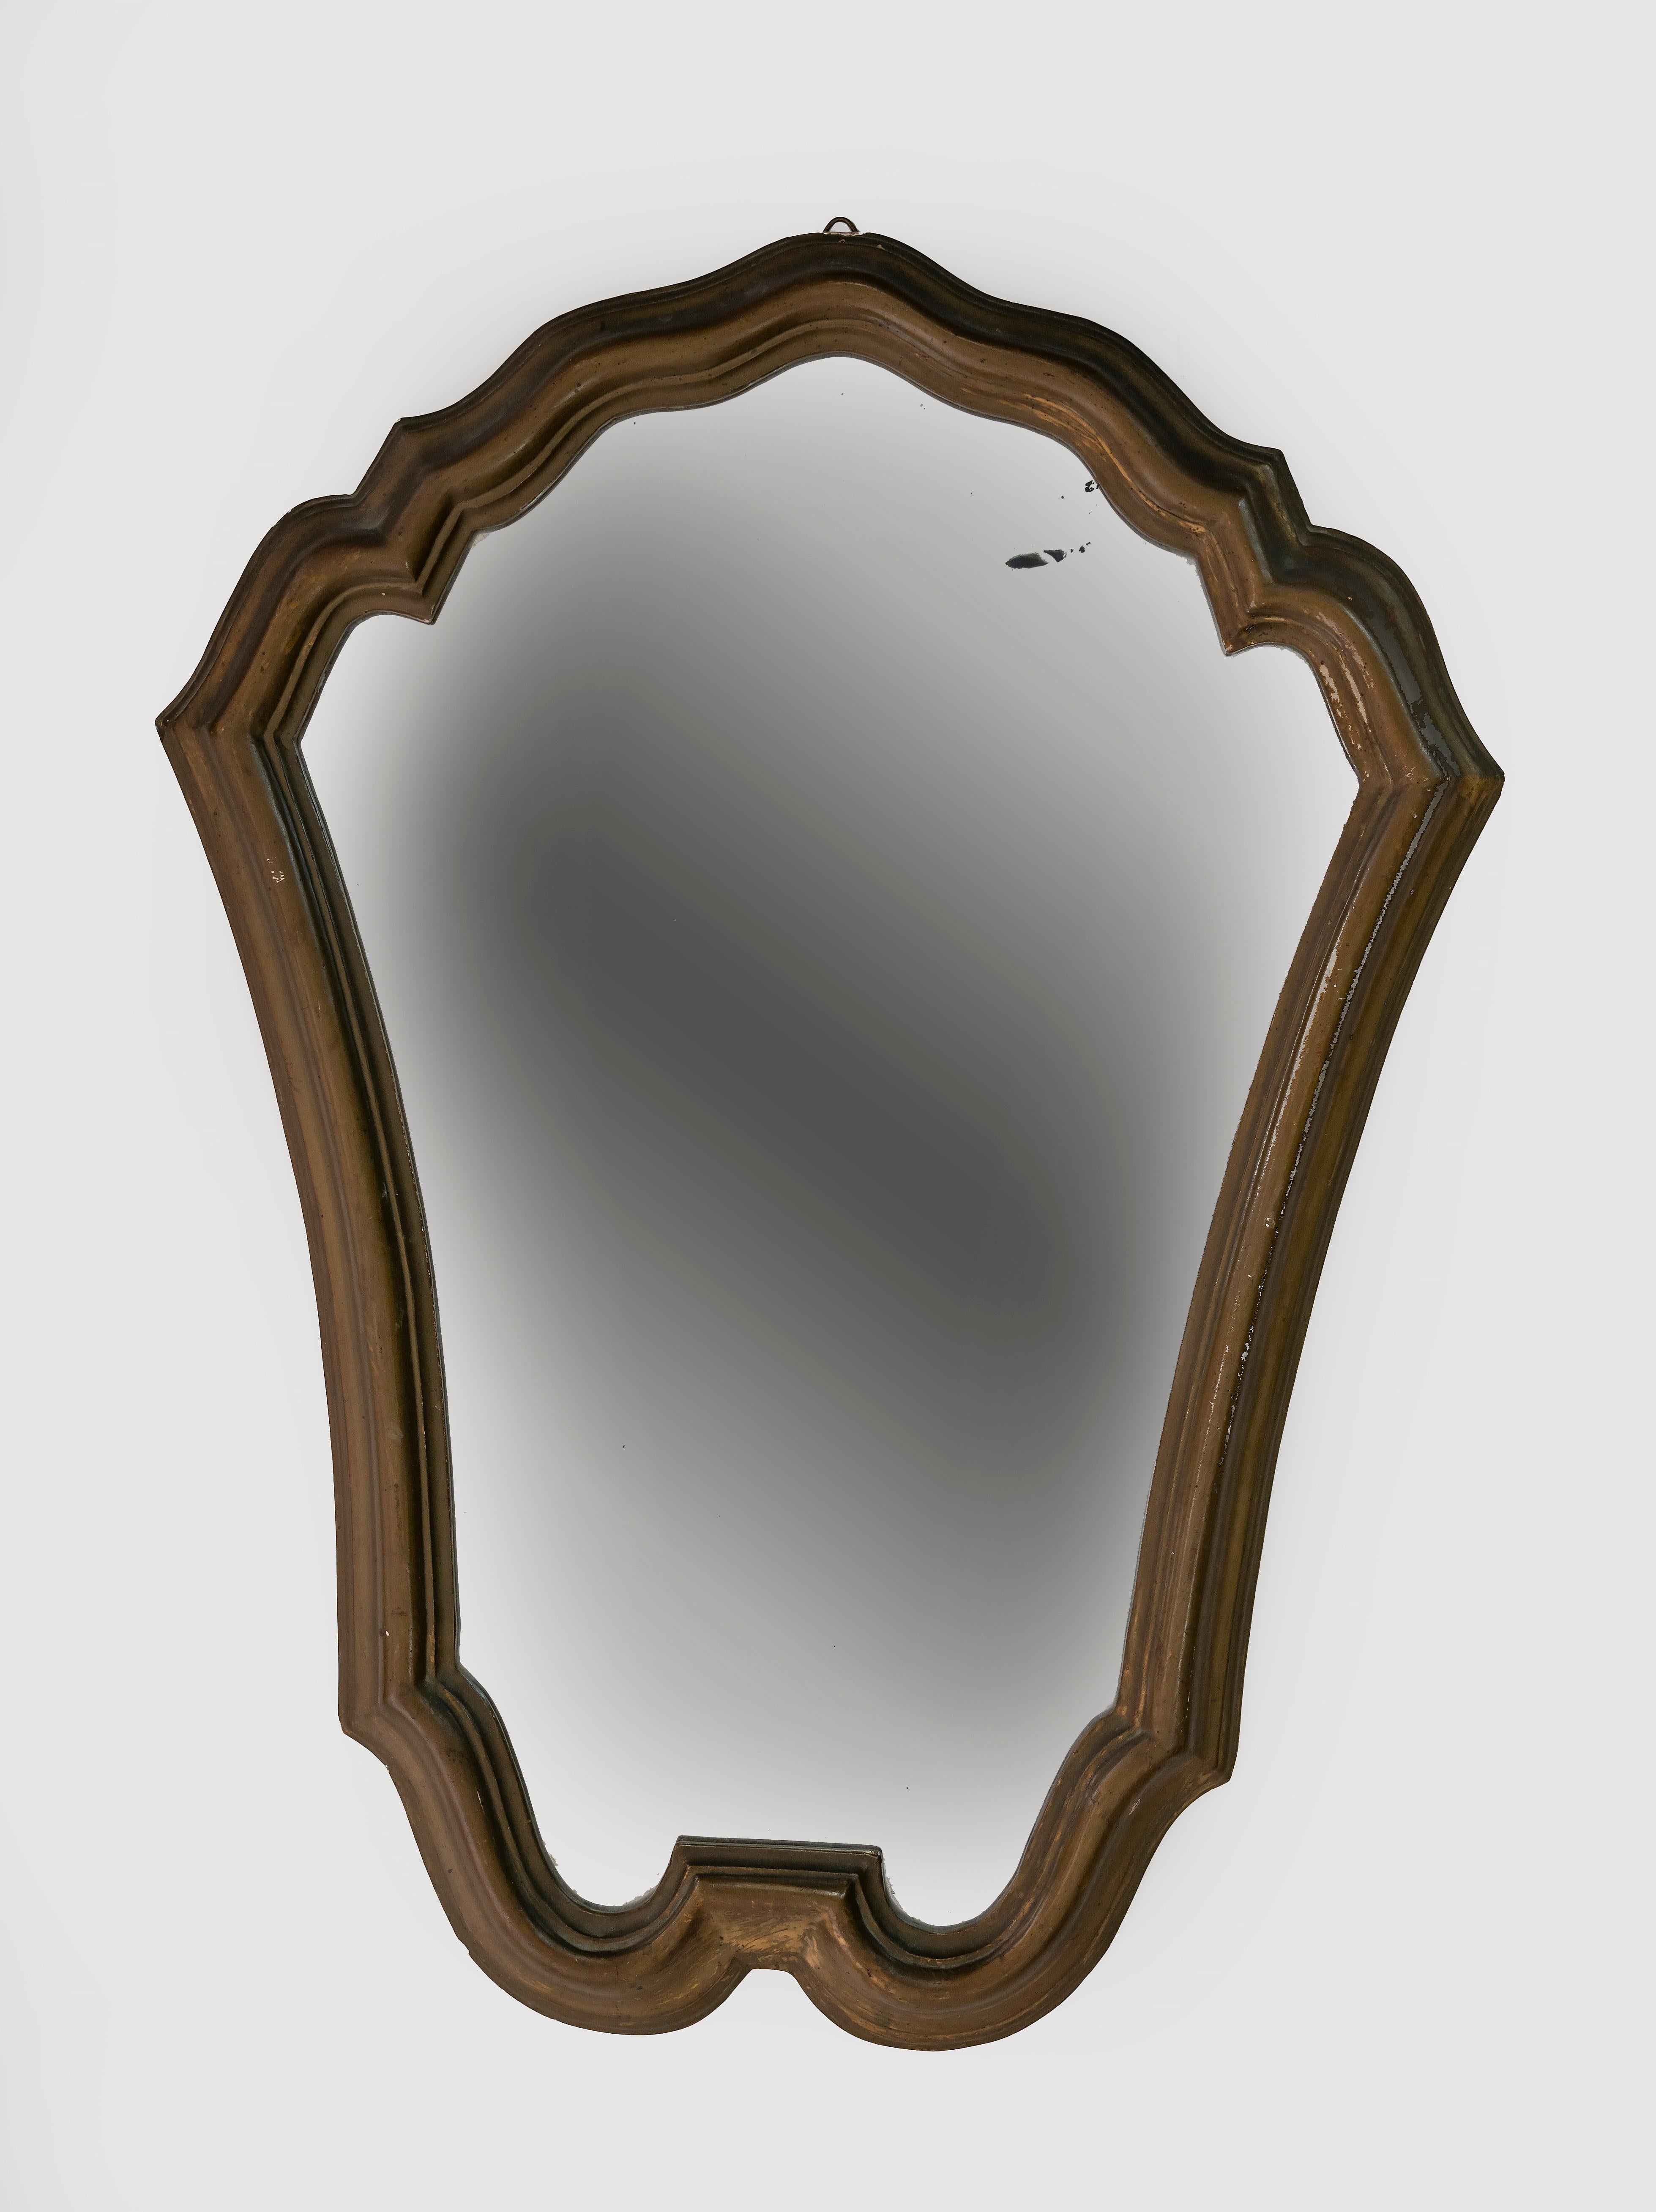 Vintage Mirror est un objet de design original réalisé au début du 20ème siècle en Italie.

Bon état sauf quelques pertes mineures du bois et des taches sur le verre du miroir.

Donnez une touche d'élégance à votre pièce avec ce miroir étonnant.